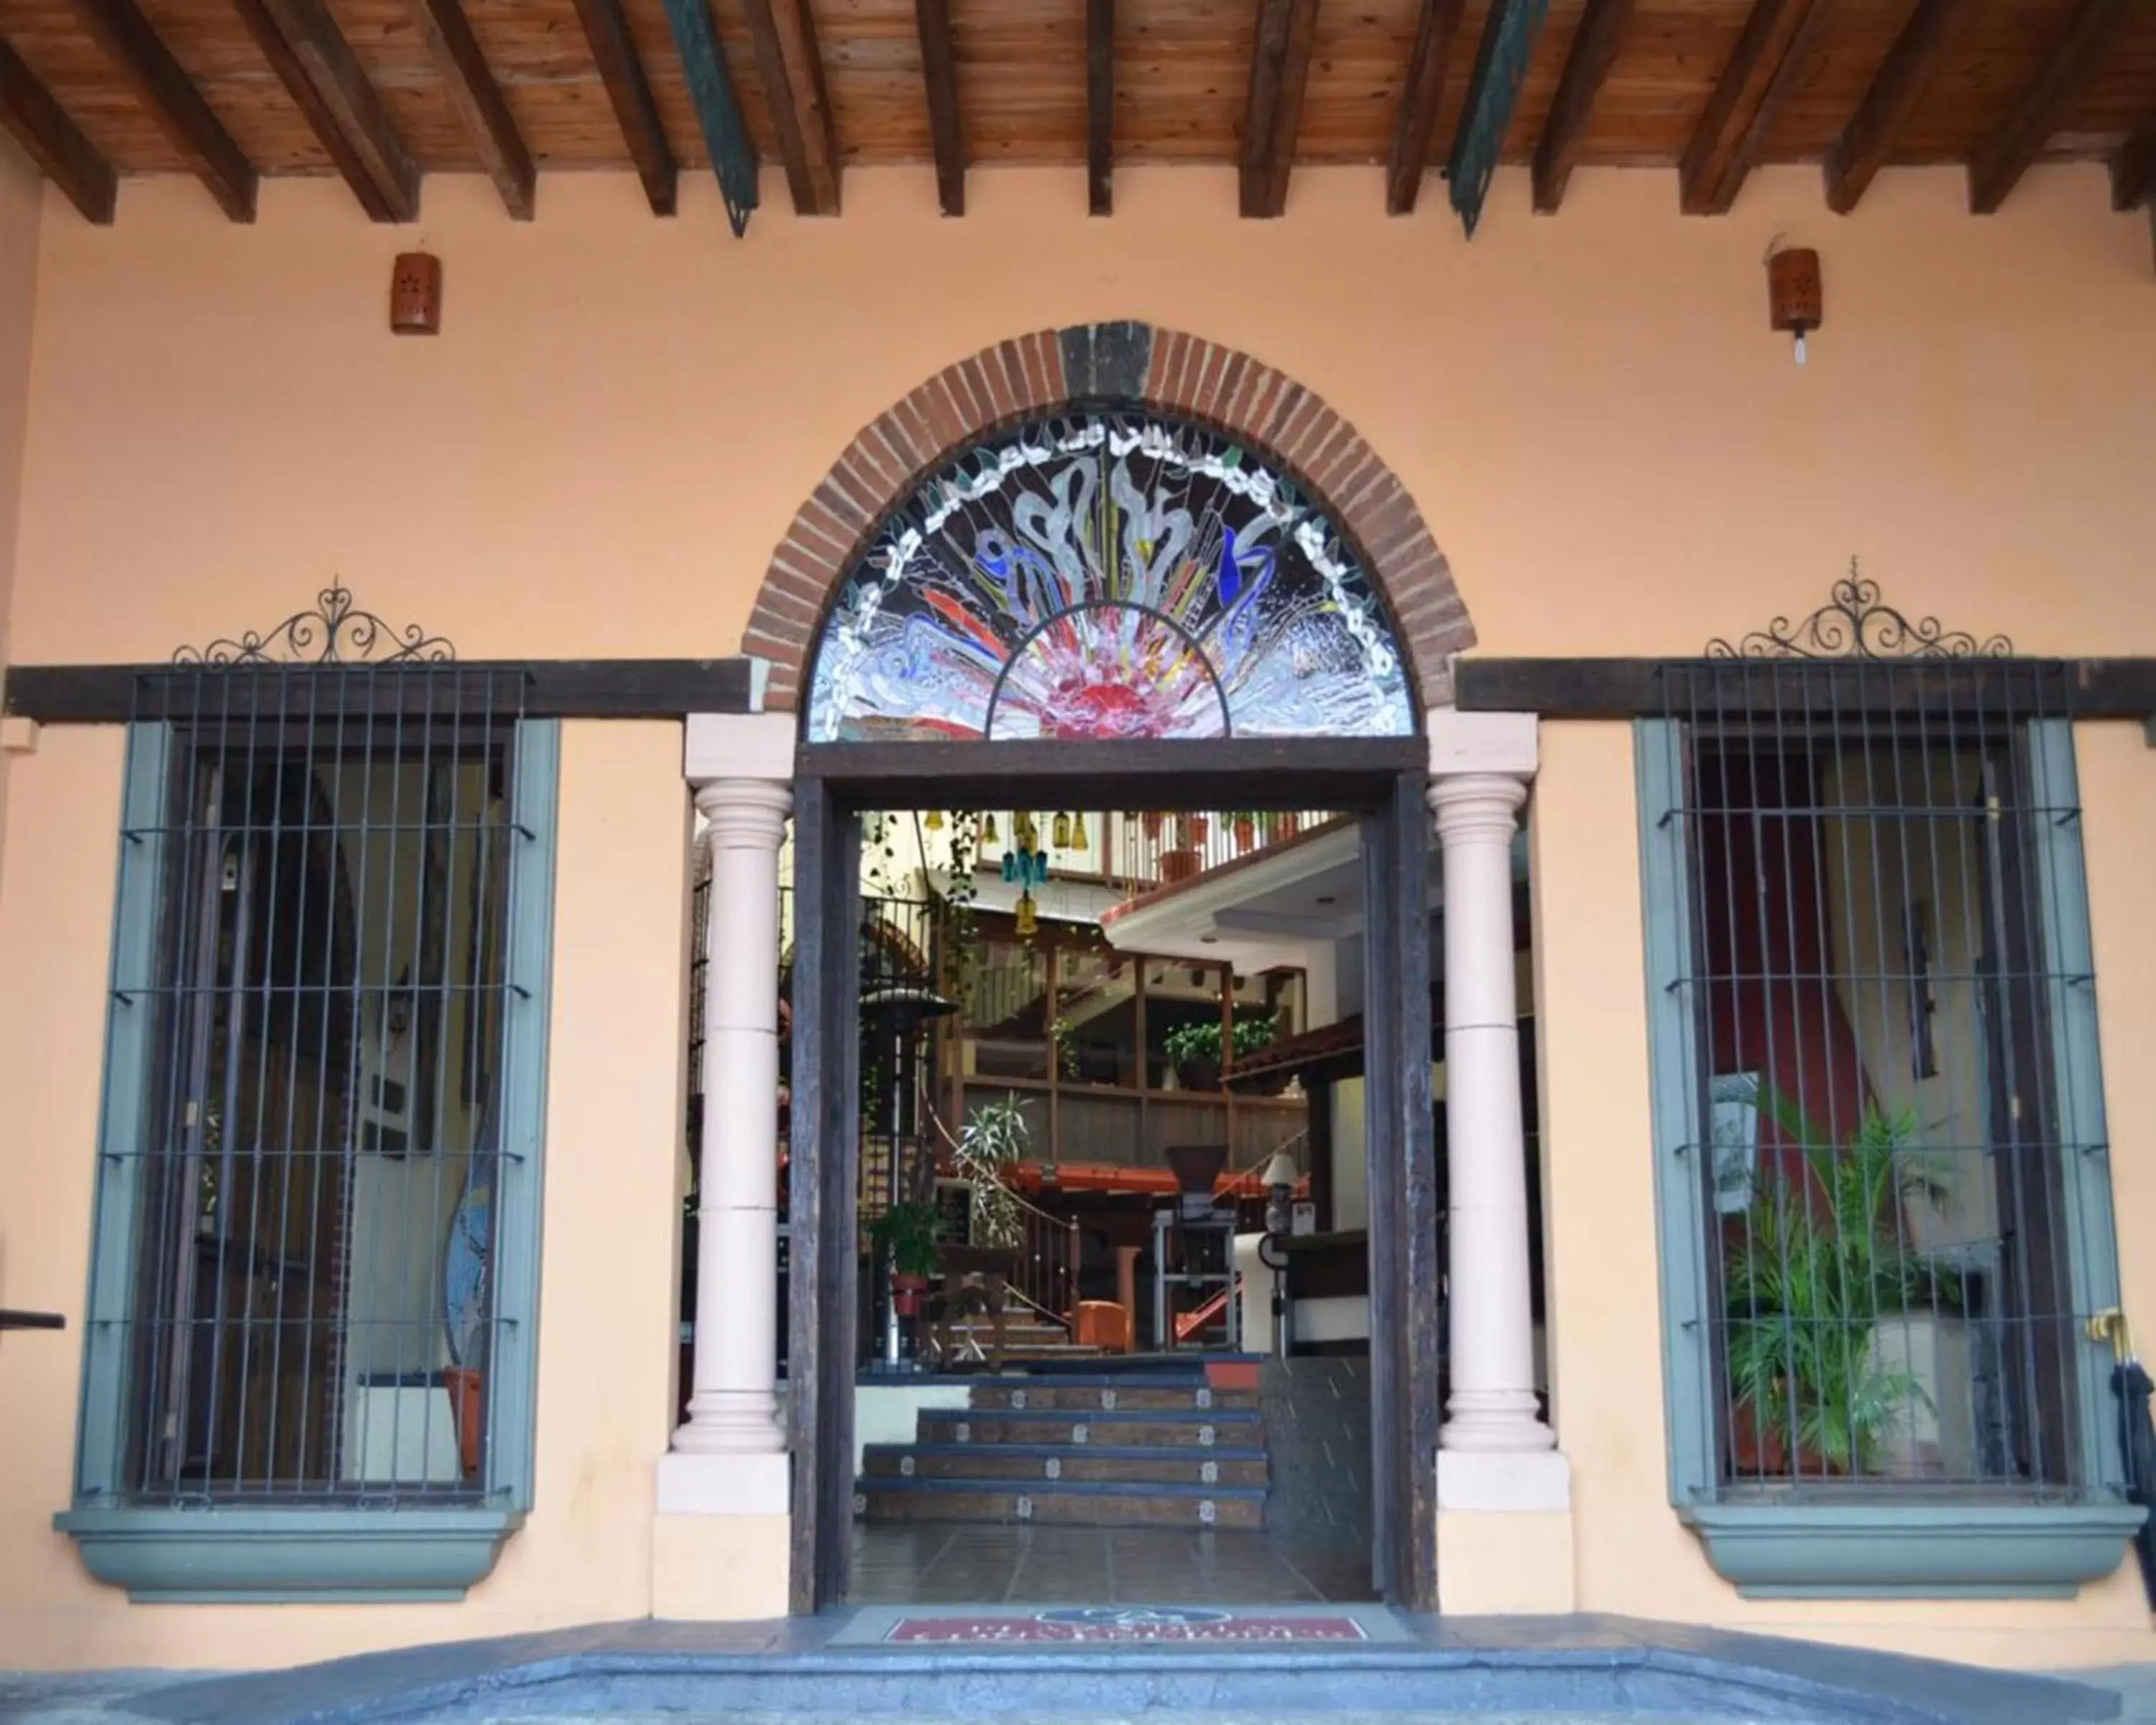 Facade/entrance in Mision Xalapa Plaza de las Convenciones